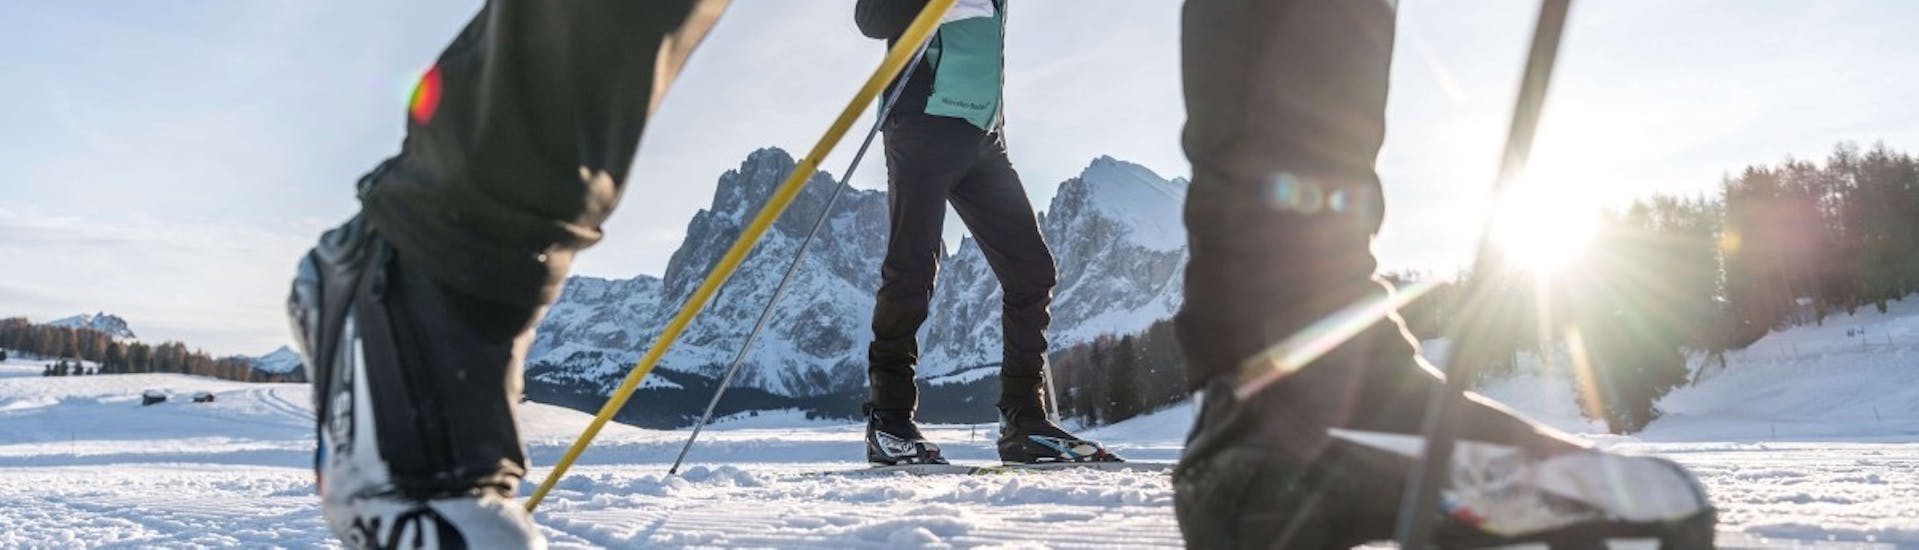 Cours particulier de ski de fond pour Tous niveaux.